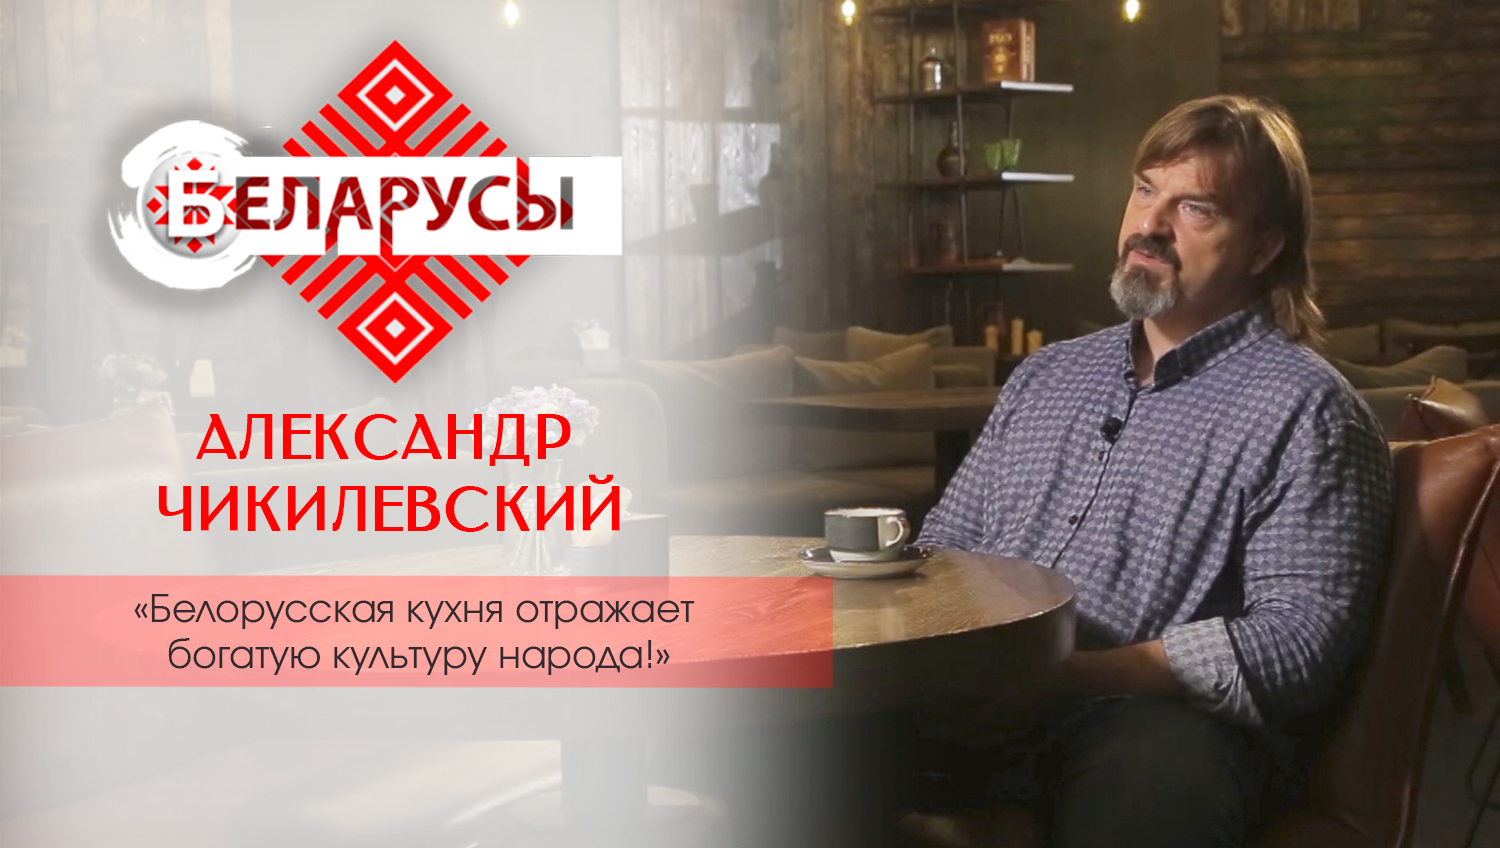 Драники – не исконно белорусское блюдо?! Раскрываем тайны национальной кухни